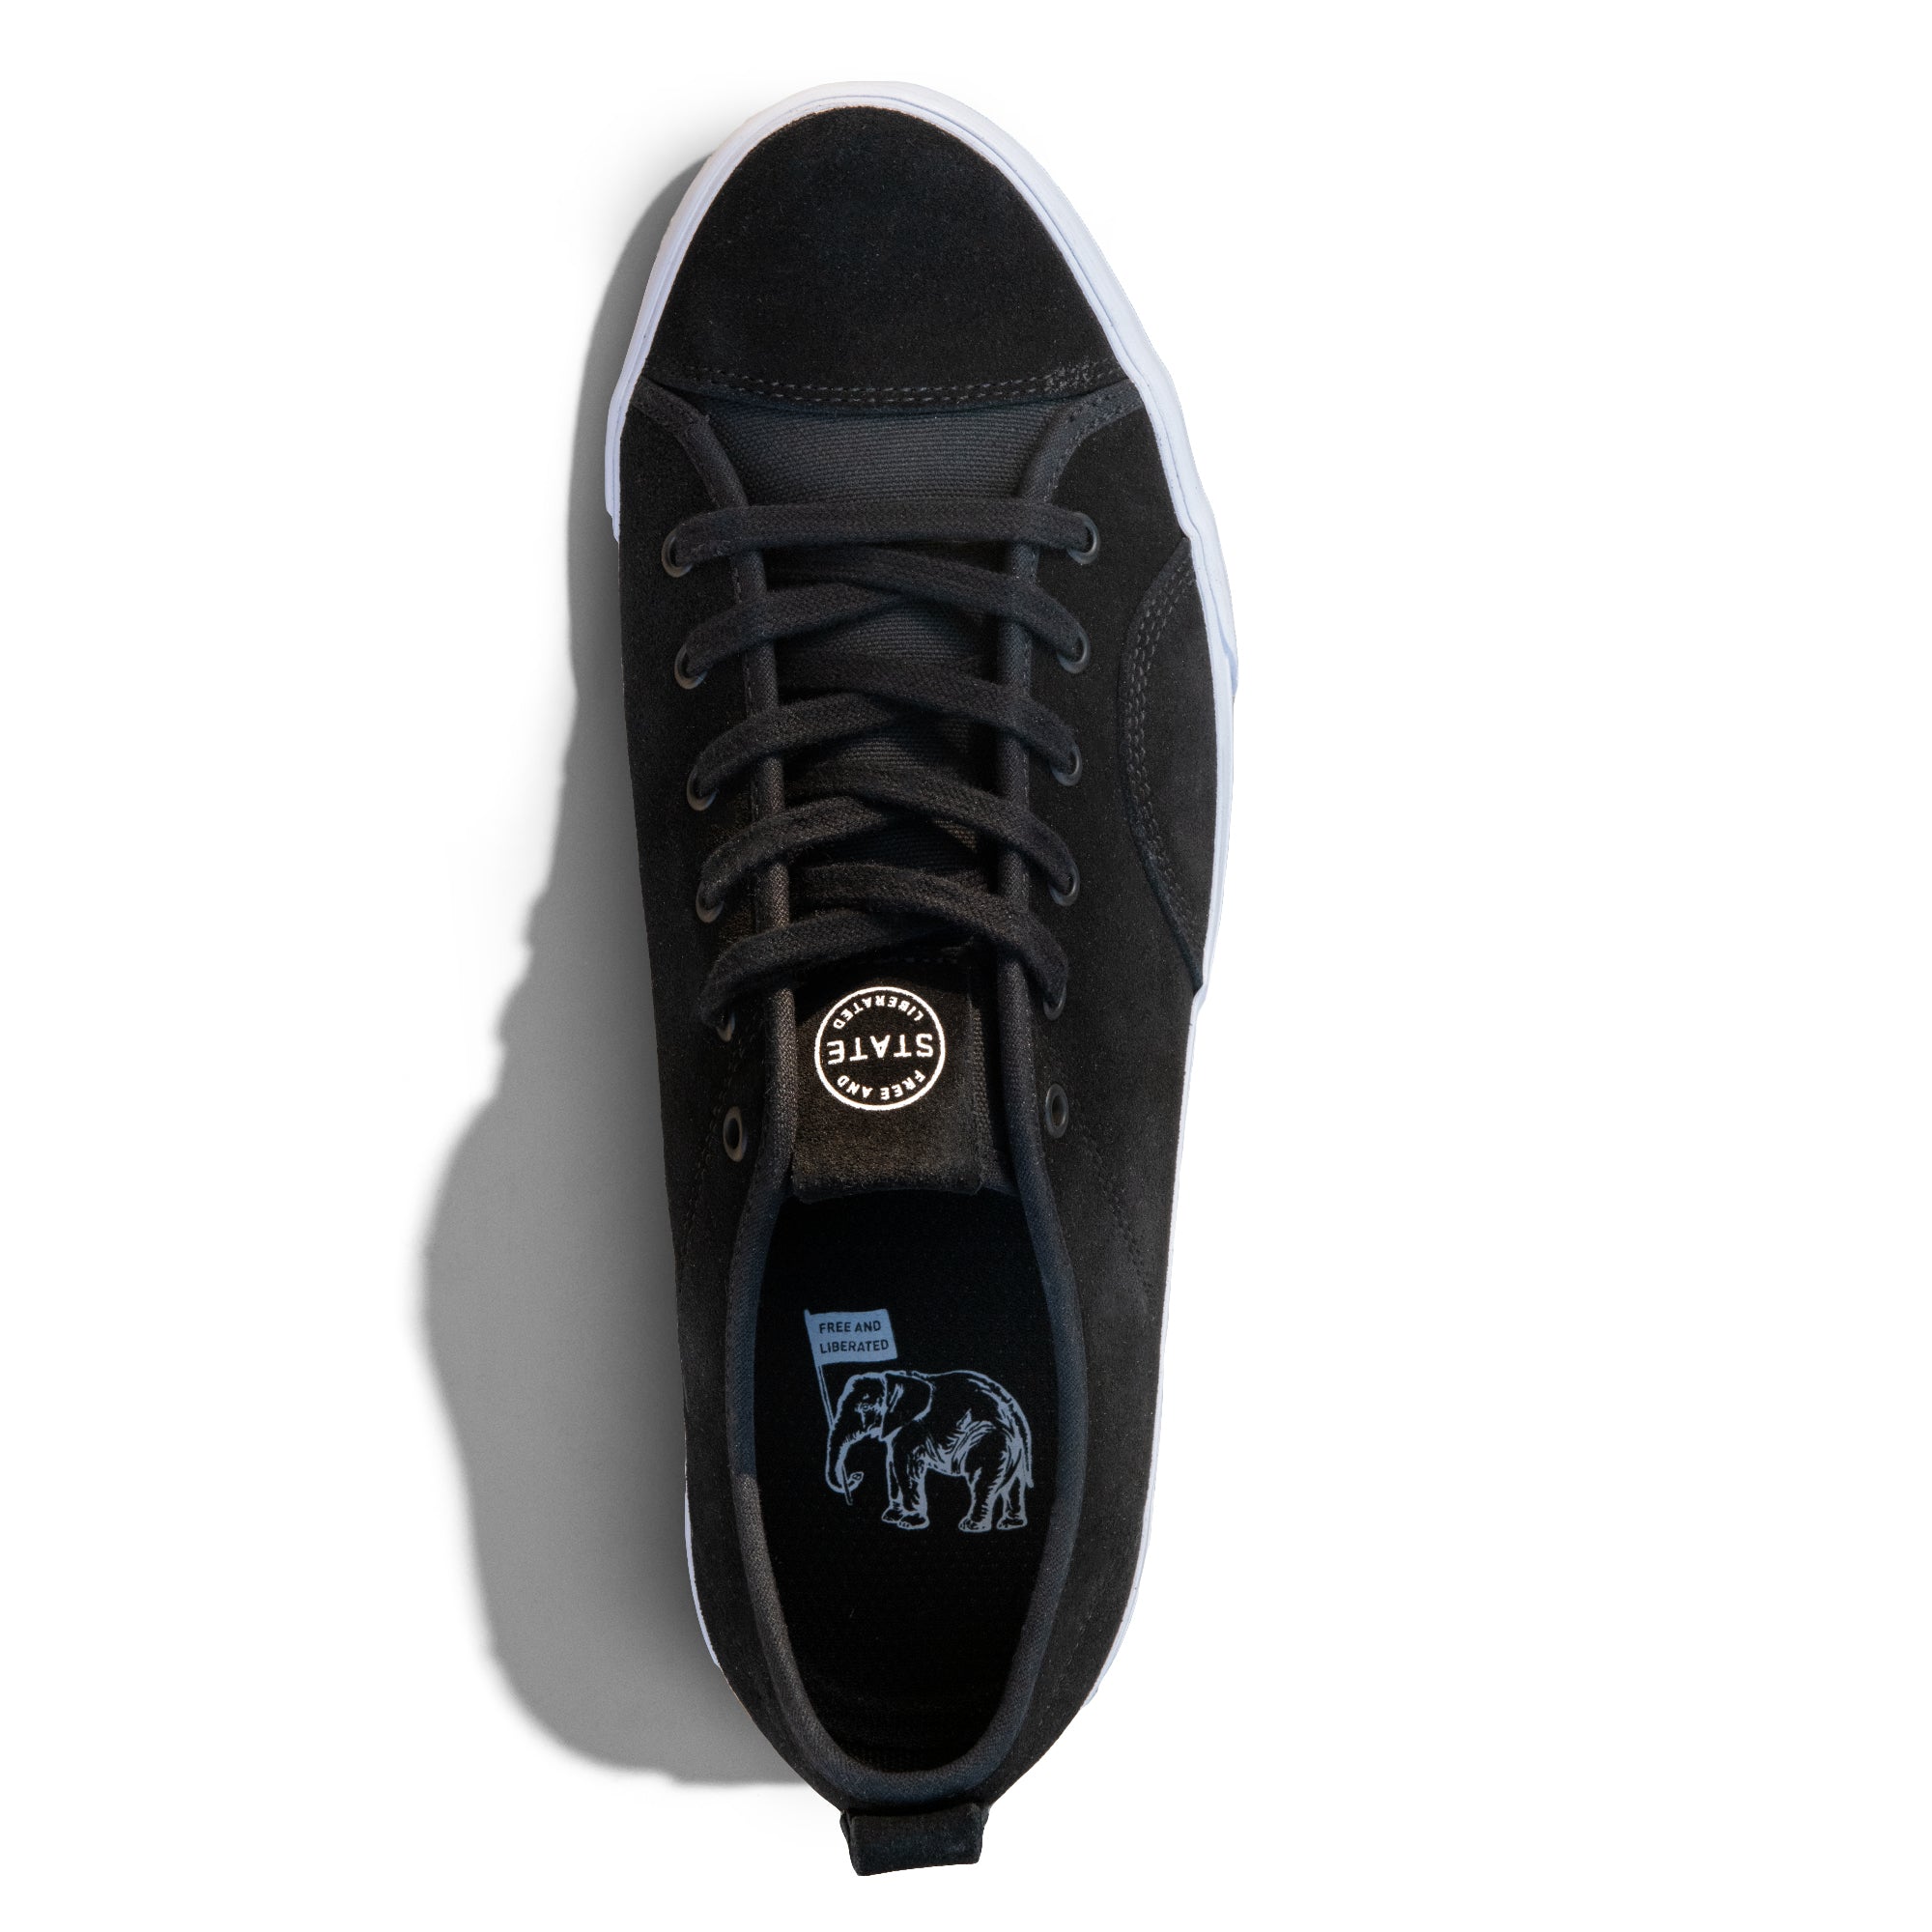 Harlem Black Suede – statefootwear.com